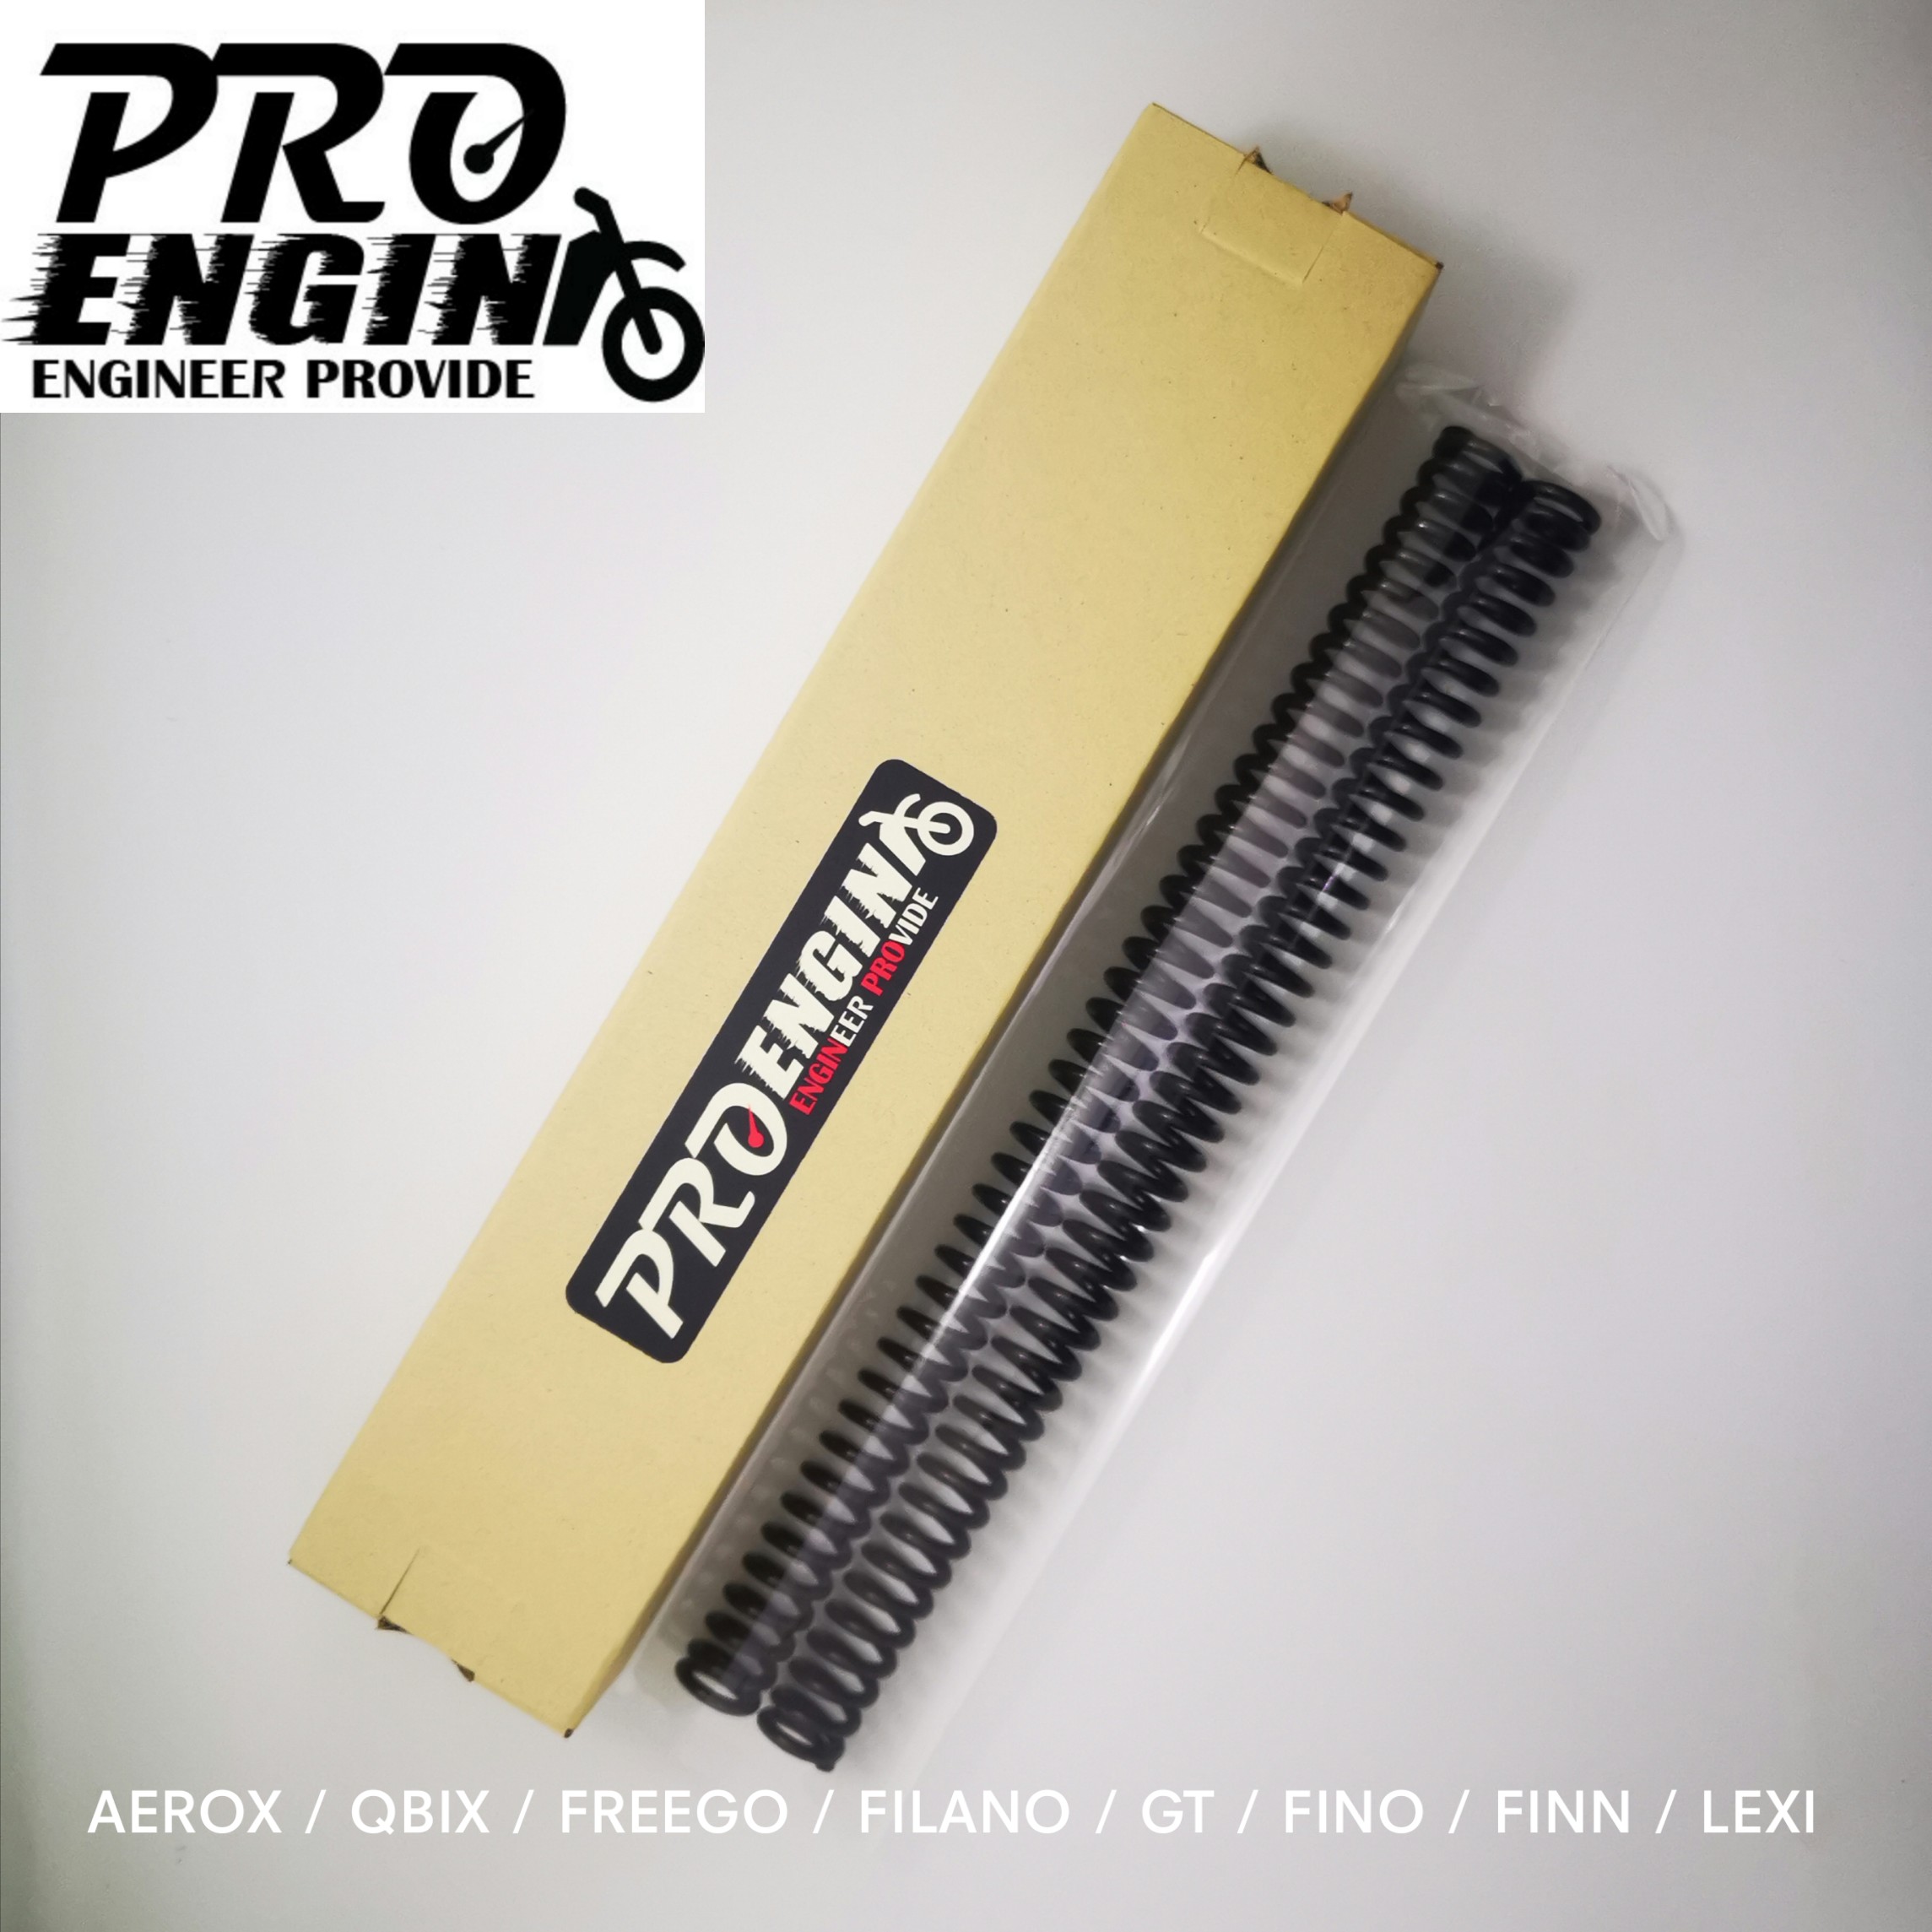 สปริงโช๊คหน้า PRO ENGIN แก้ปัญหาโช๊คแข็ง กระแทก ย้วย Aerox/Qbix/Lexi/GrandFilano/Freego/Fino/GT/Finn